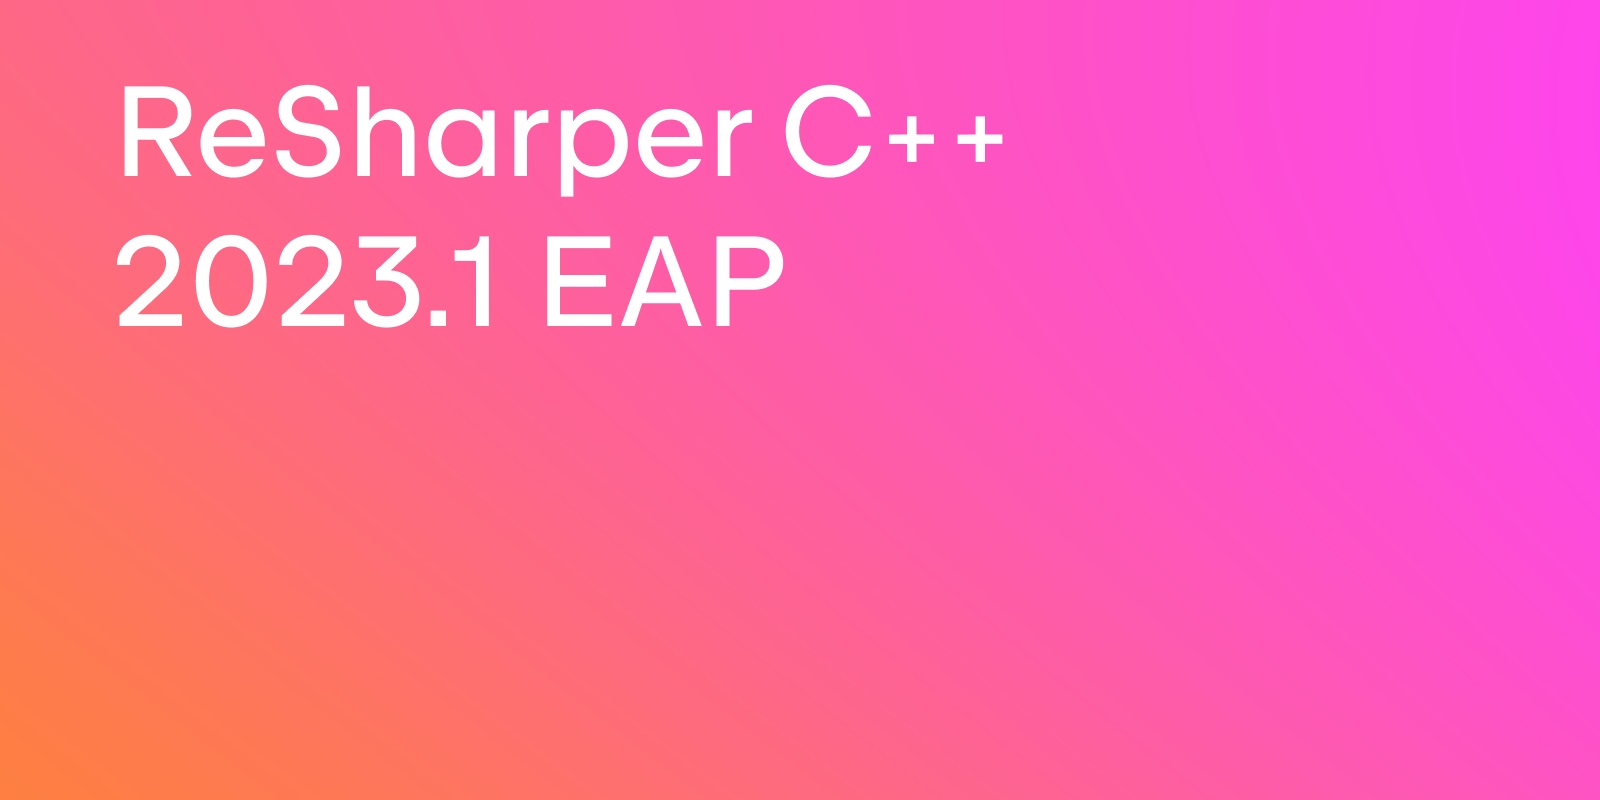 ReSharper C++ 2023.1 EAP